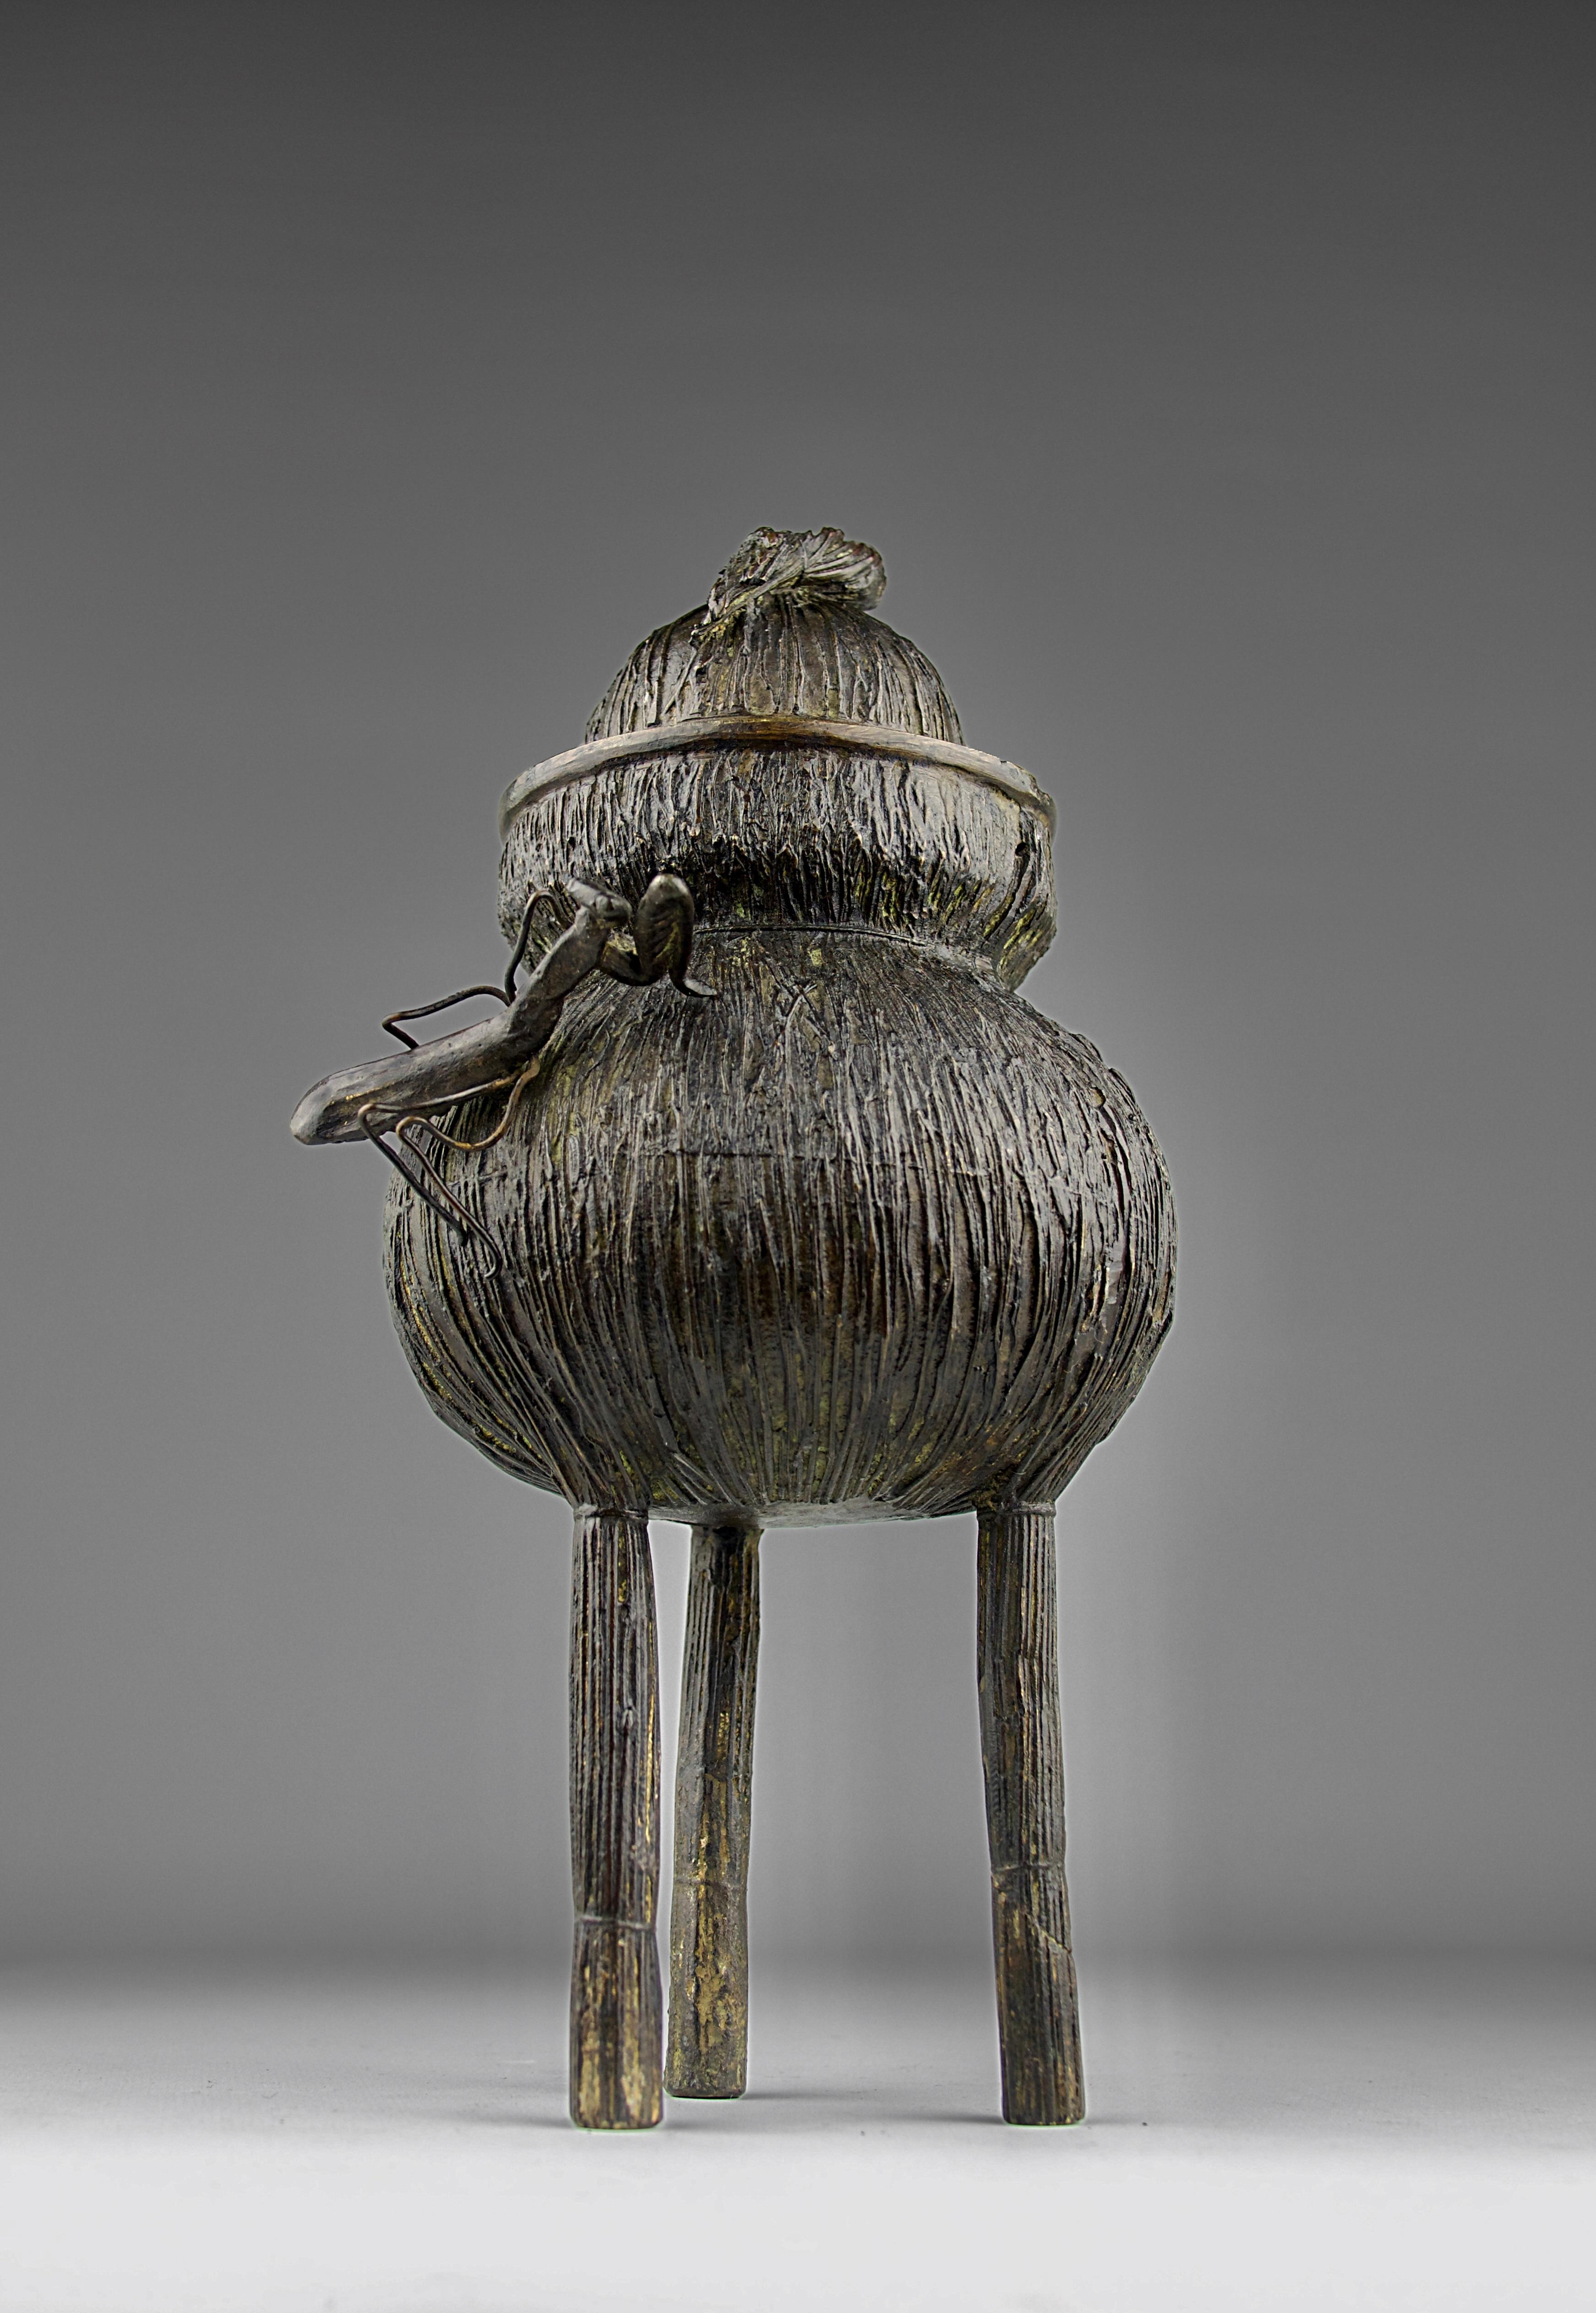 Schönes Räuchergefäß in Form eines Strohkorbs mit einer darauf sitzenden Gottesanbeterin. Bronze, Japan 19. Jahrhundert.

Guter Zustand, oxidiert, ein Bein der Gottesanbeterin fehlt.

Abmessungen in cm ( H x L x L ) : 26 x 14,5 x 11,5

Sicherer